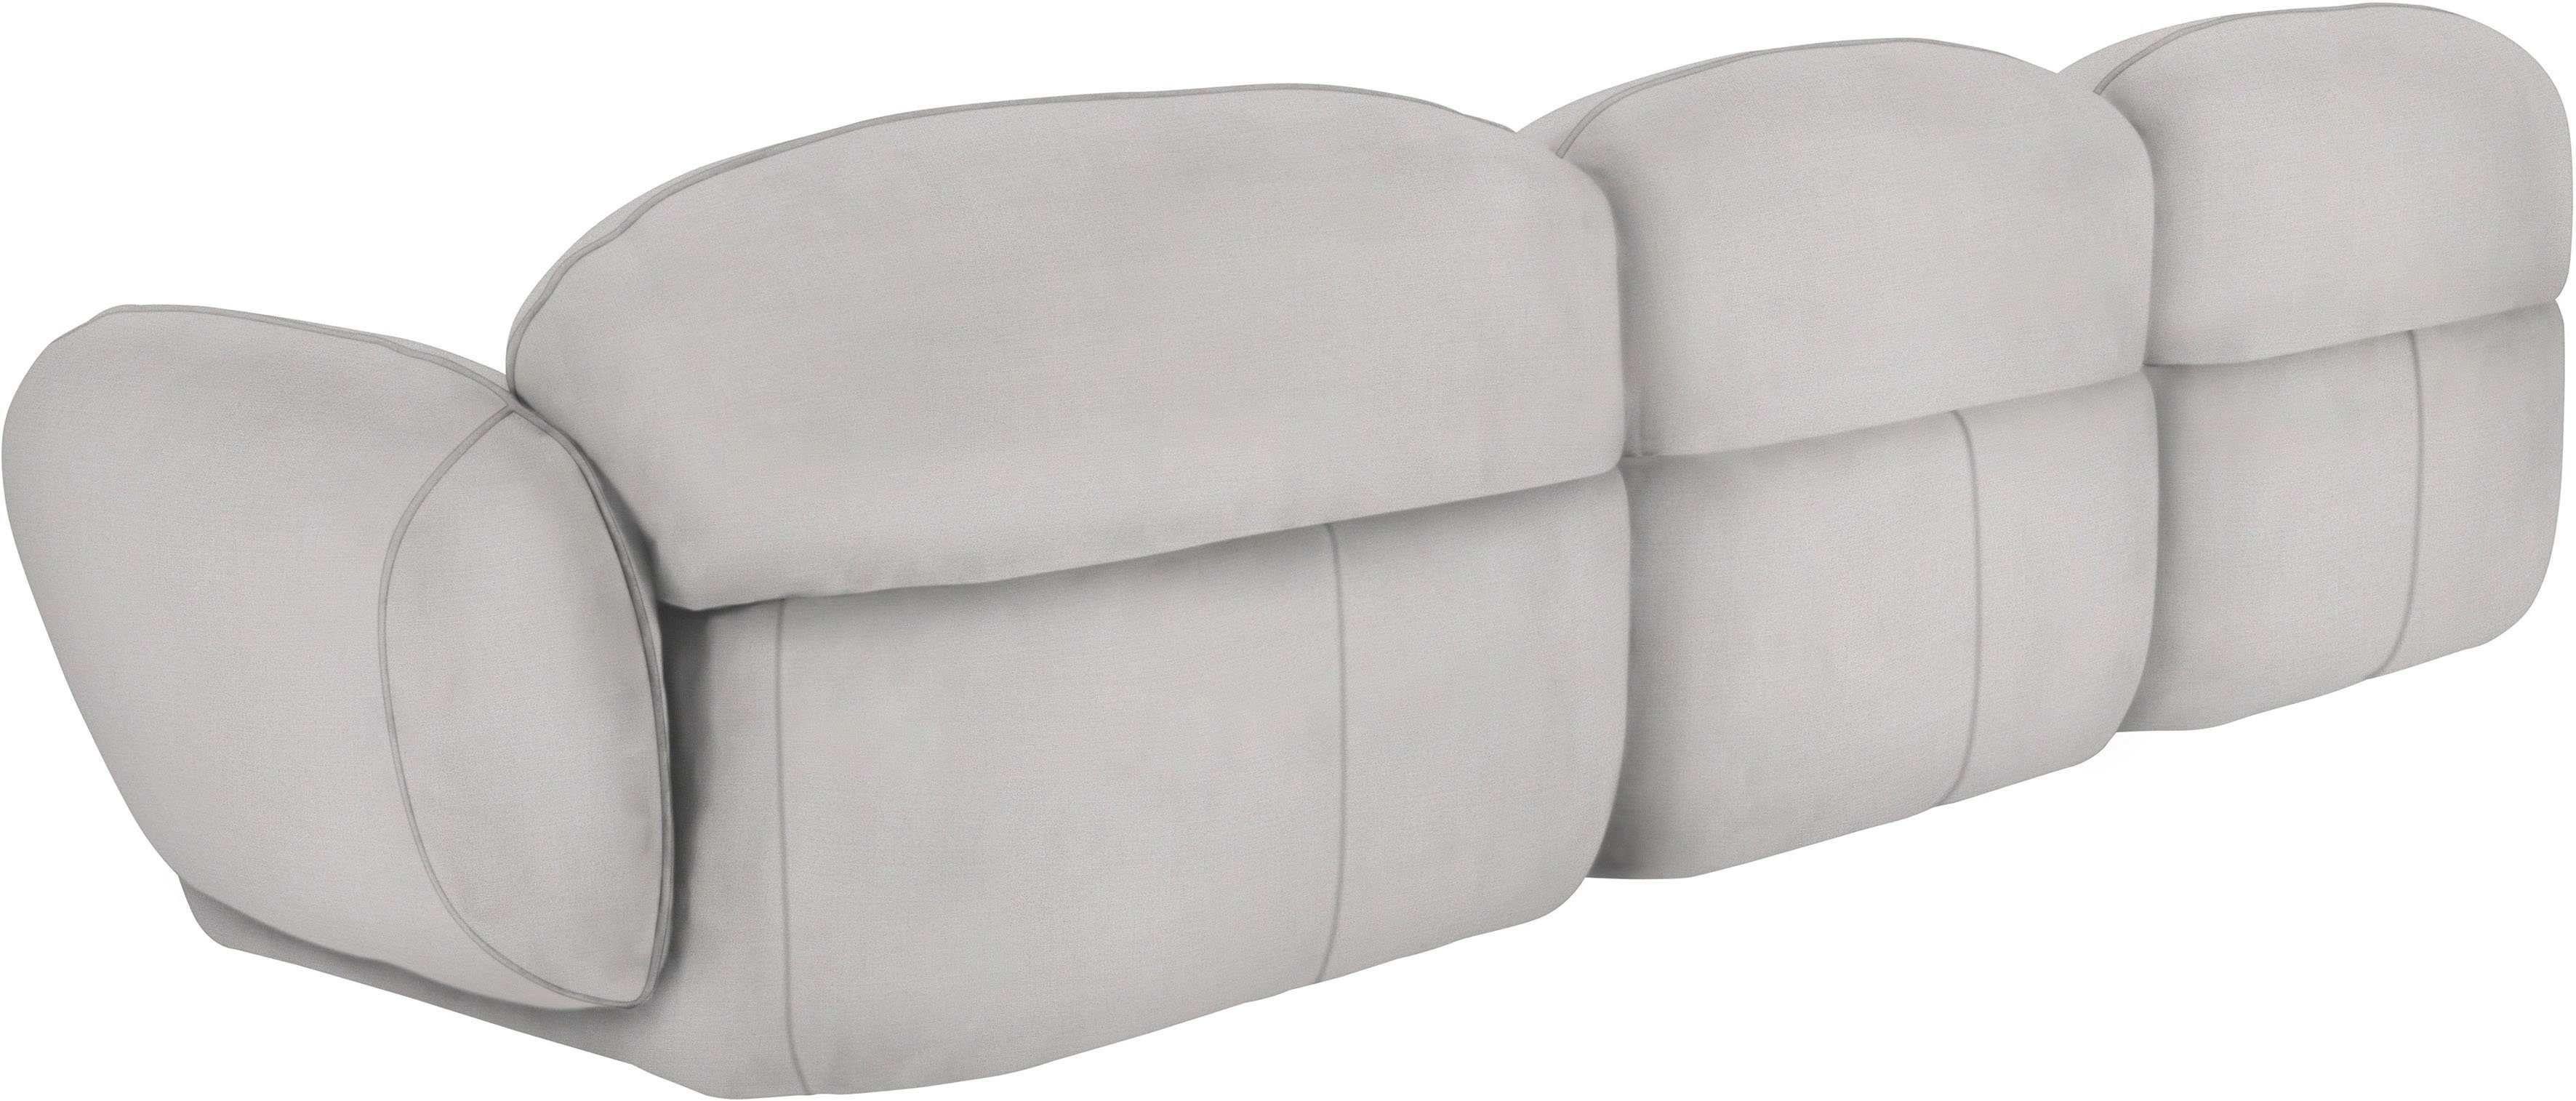 furninova 3,5-Sitzer Bubble, komfortabel durch Memoryschaum, skandinavischen Design im